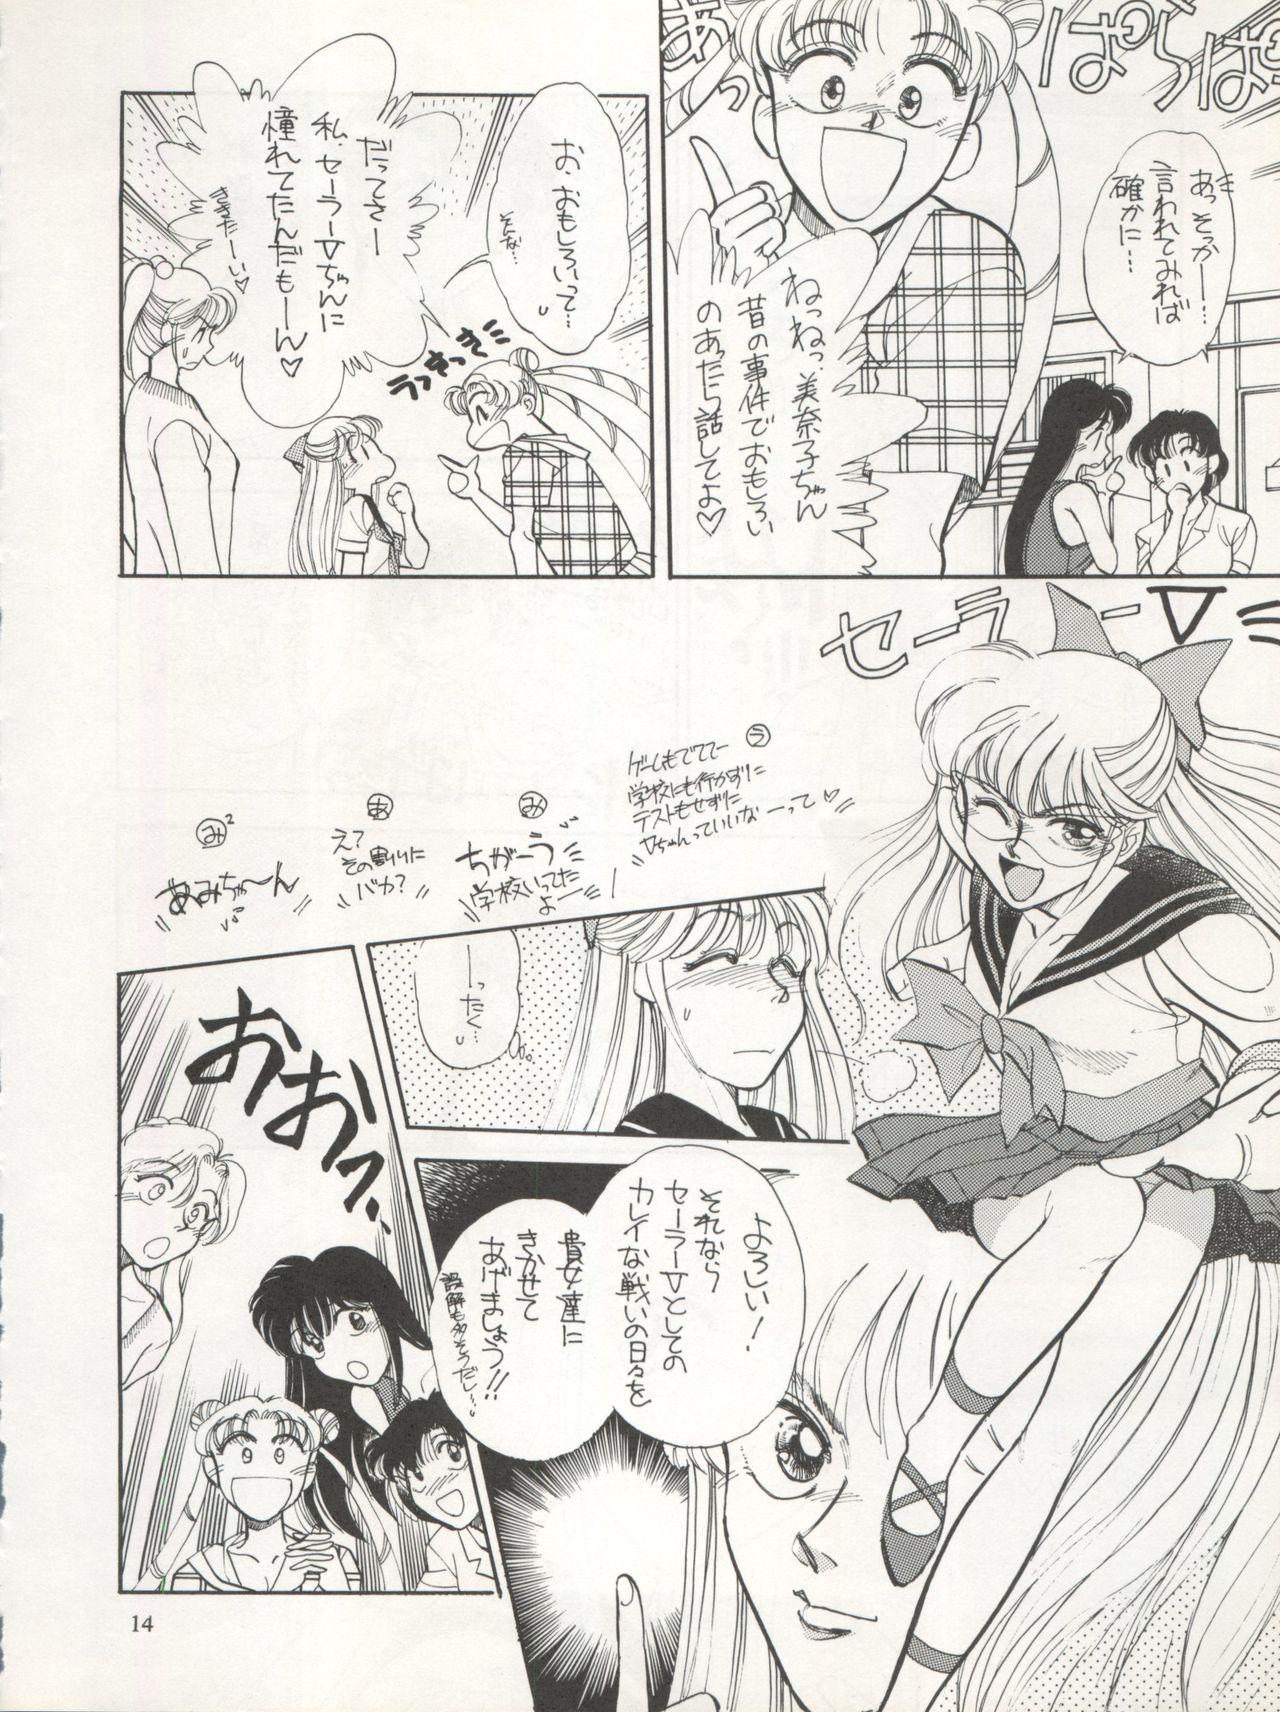 Thick Sekai Seifuku Sailor Fuku 5 - Sailor moon Shemales - Page 12